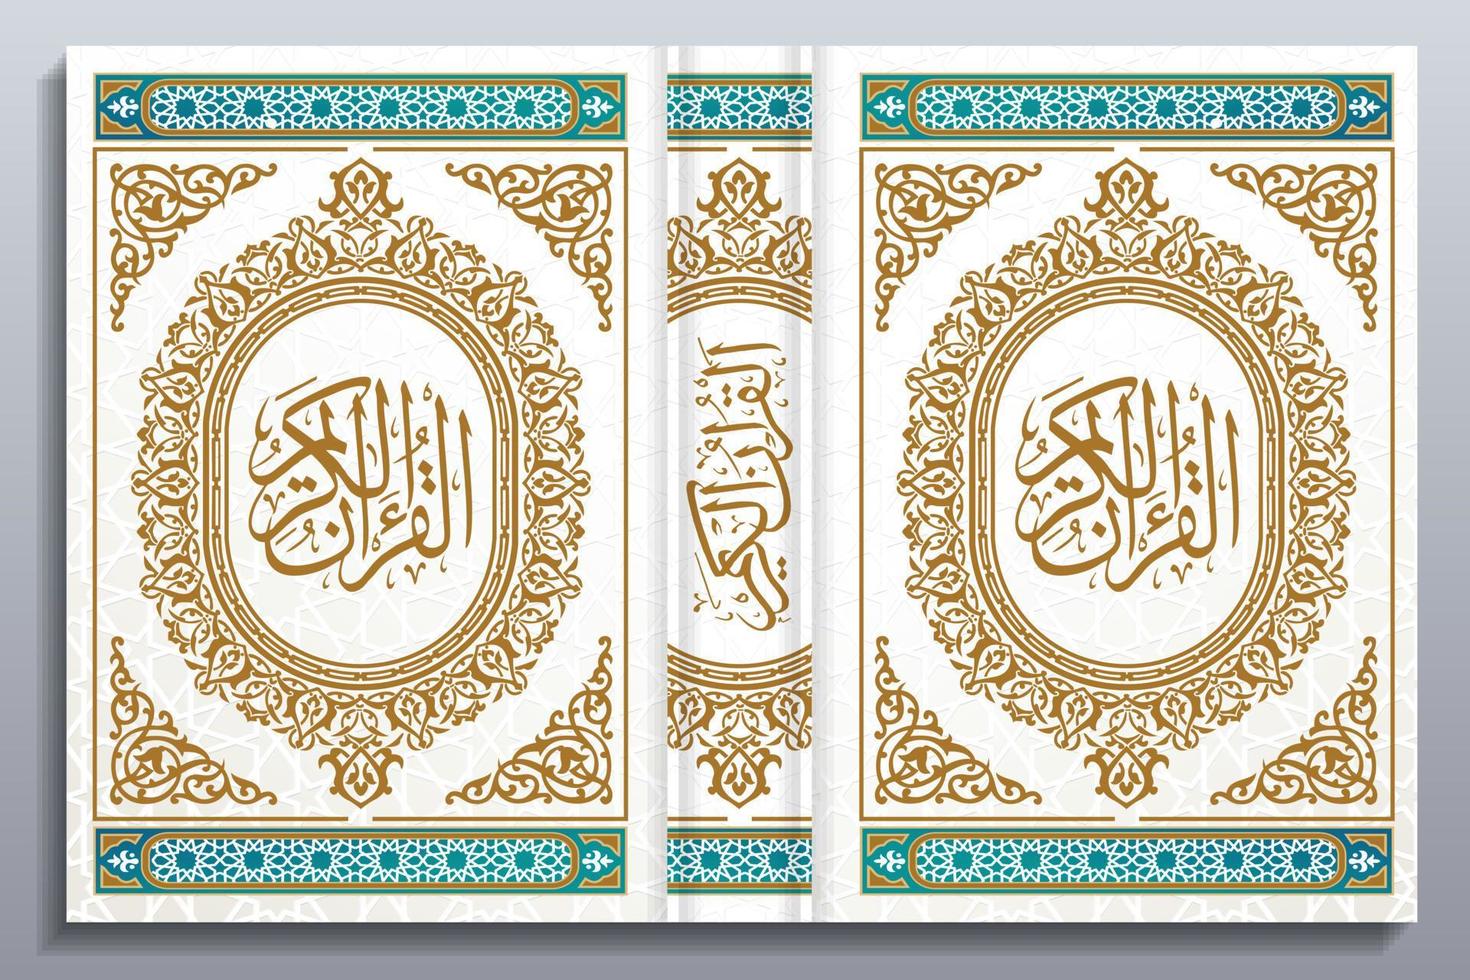 Beautiful Quran Cover Design, Floral Frames, Colors, Abstract, Vector, Quran Kareem, Al Quran, Islamic Book Cover, vector